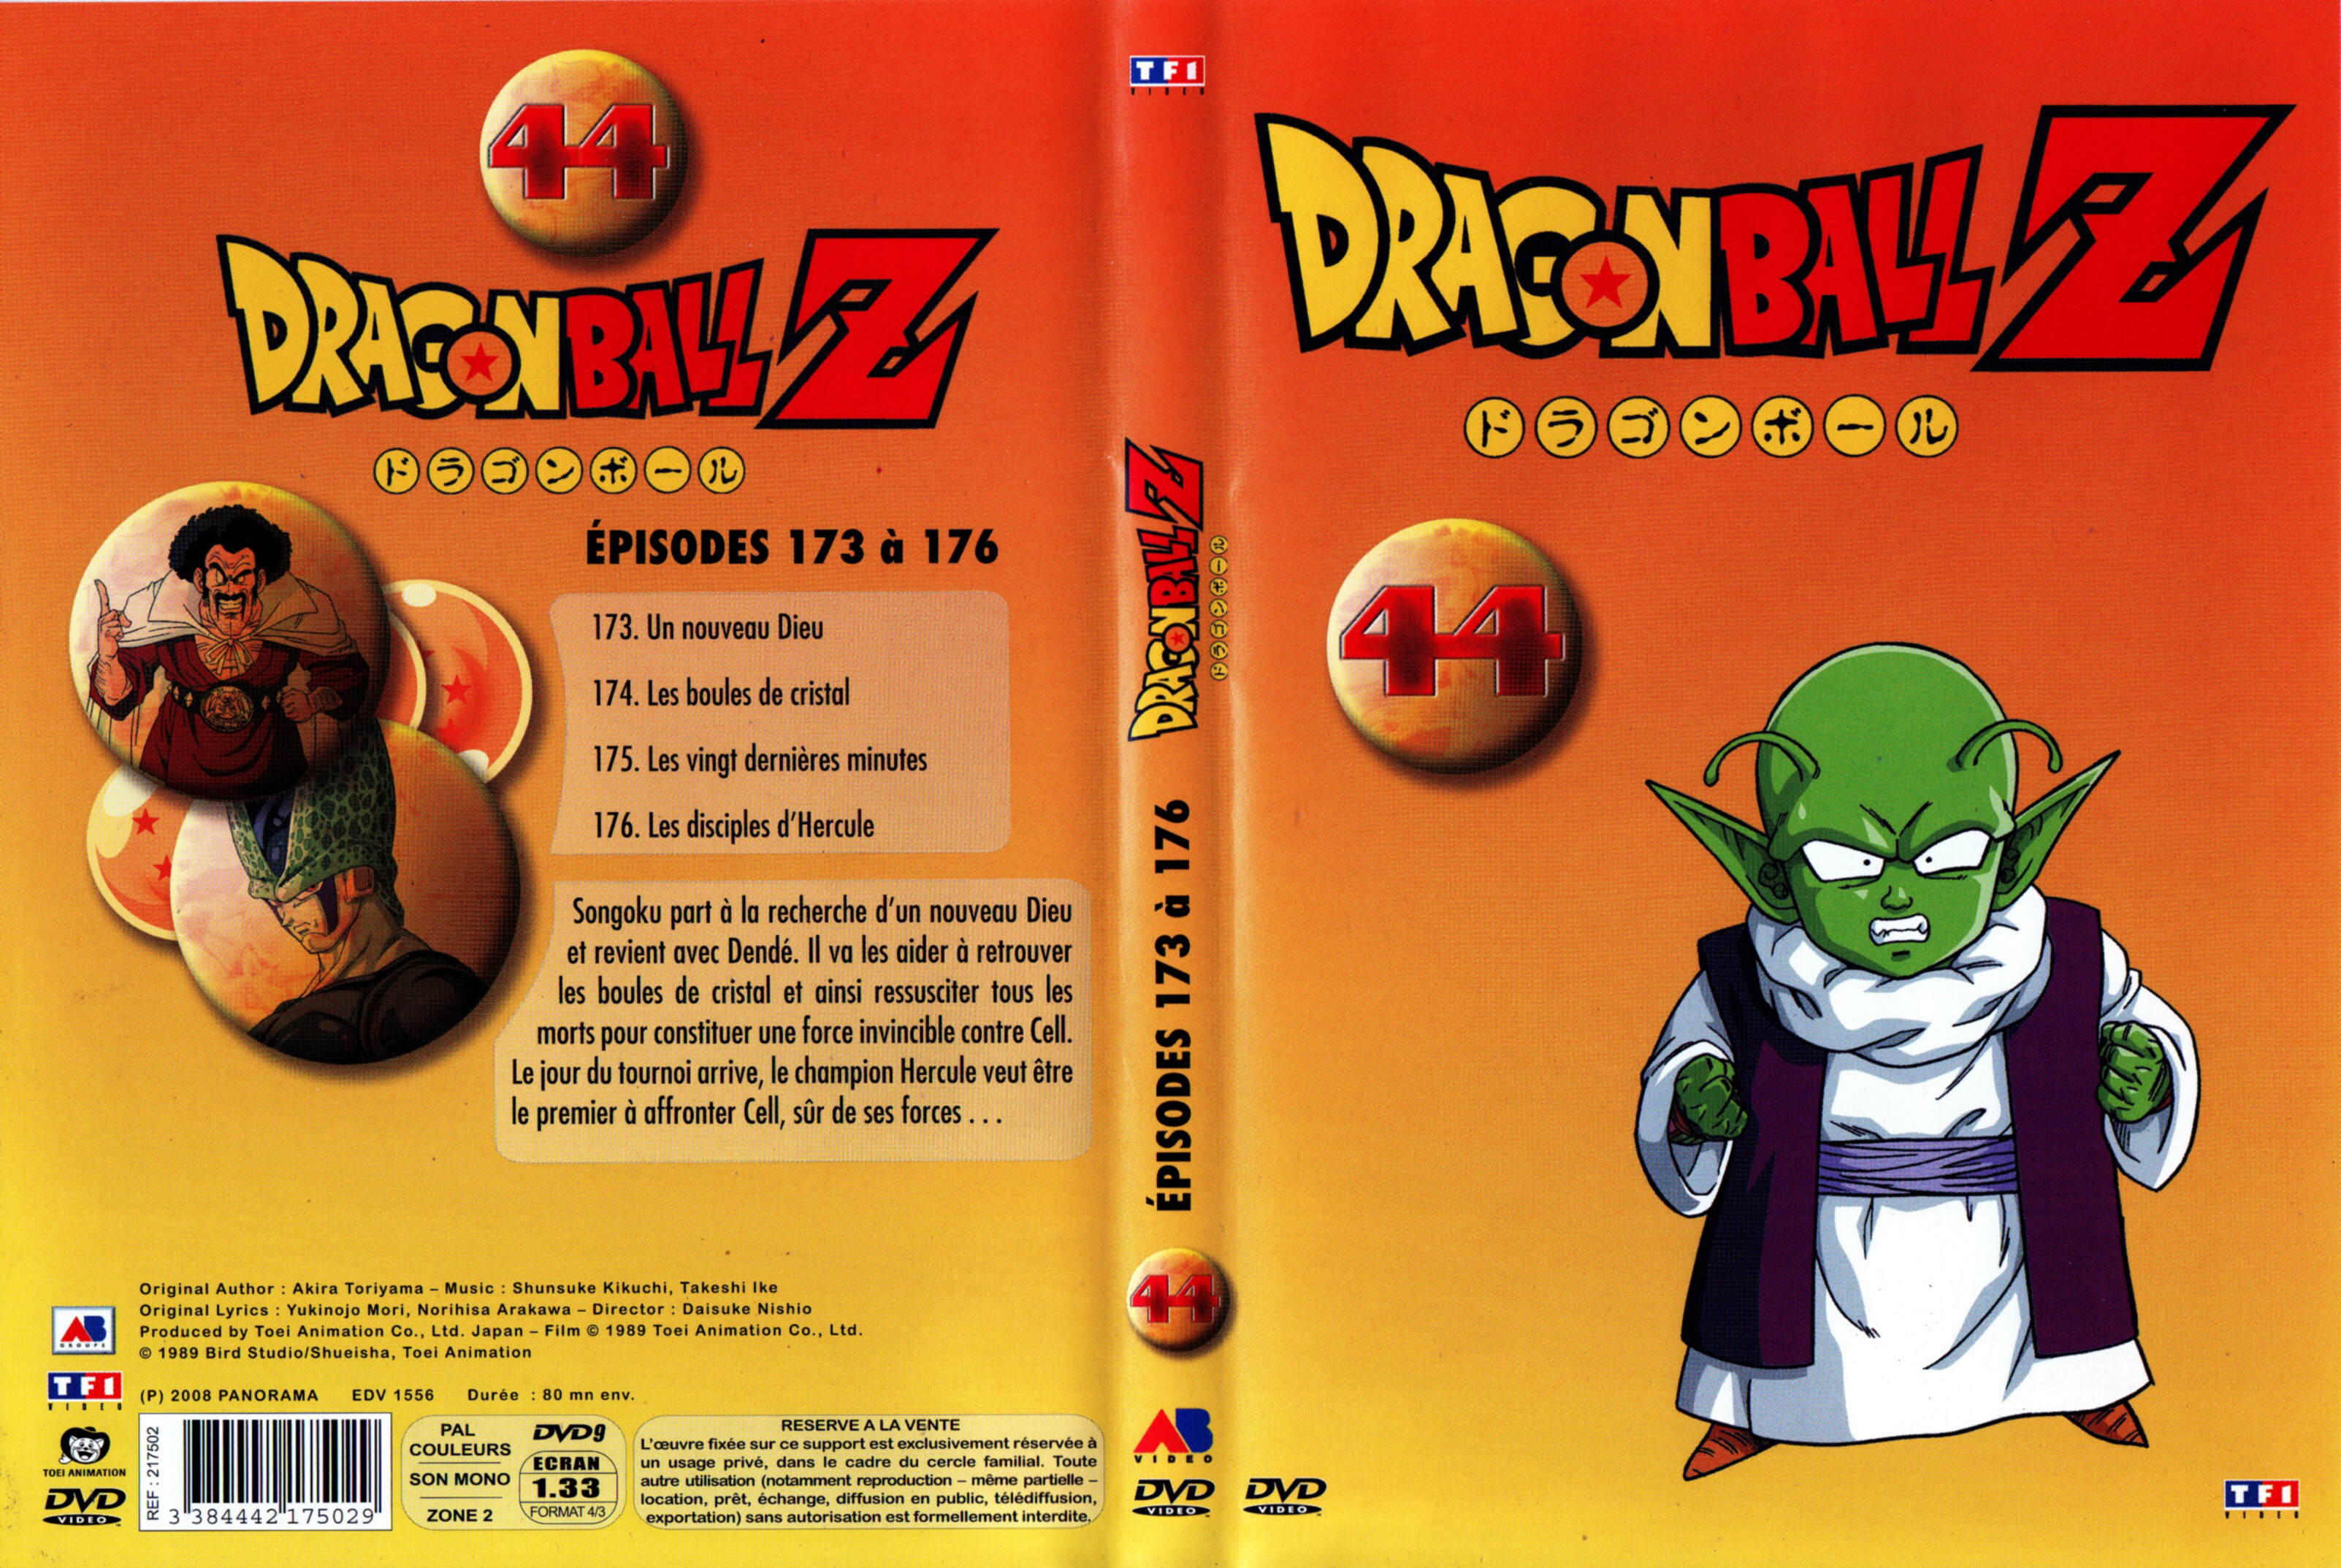 Jaquette DVD Dragon Ball Z vol 44 v2